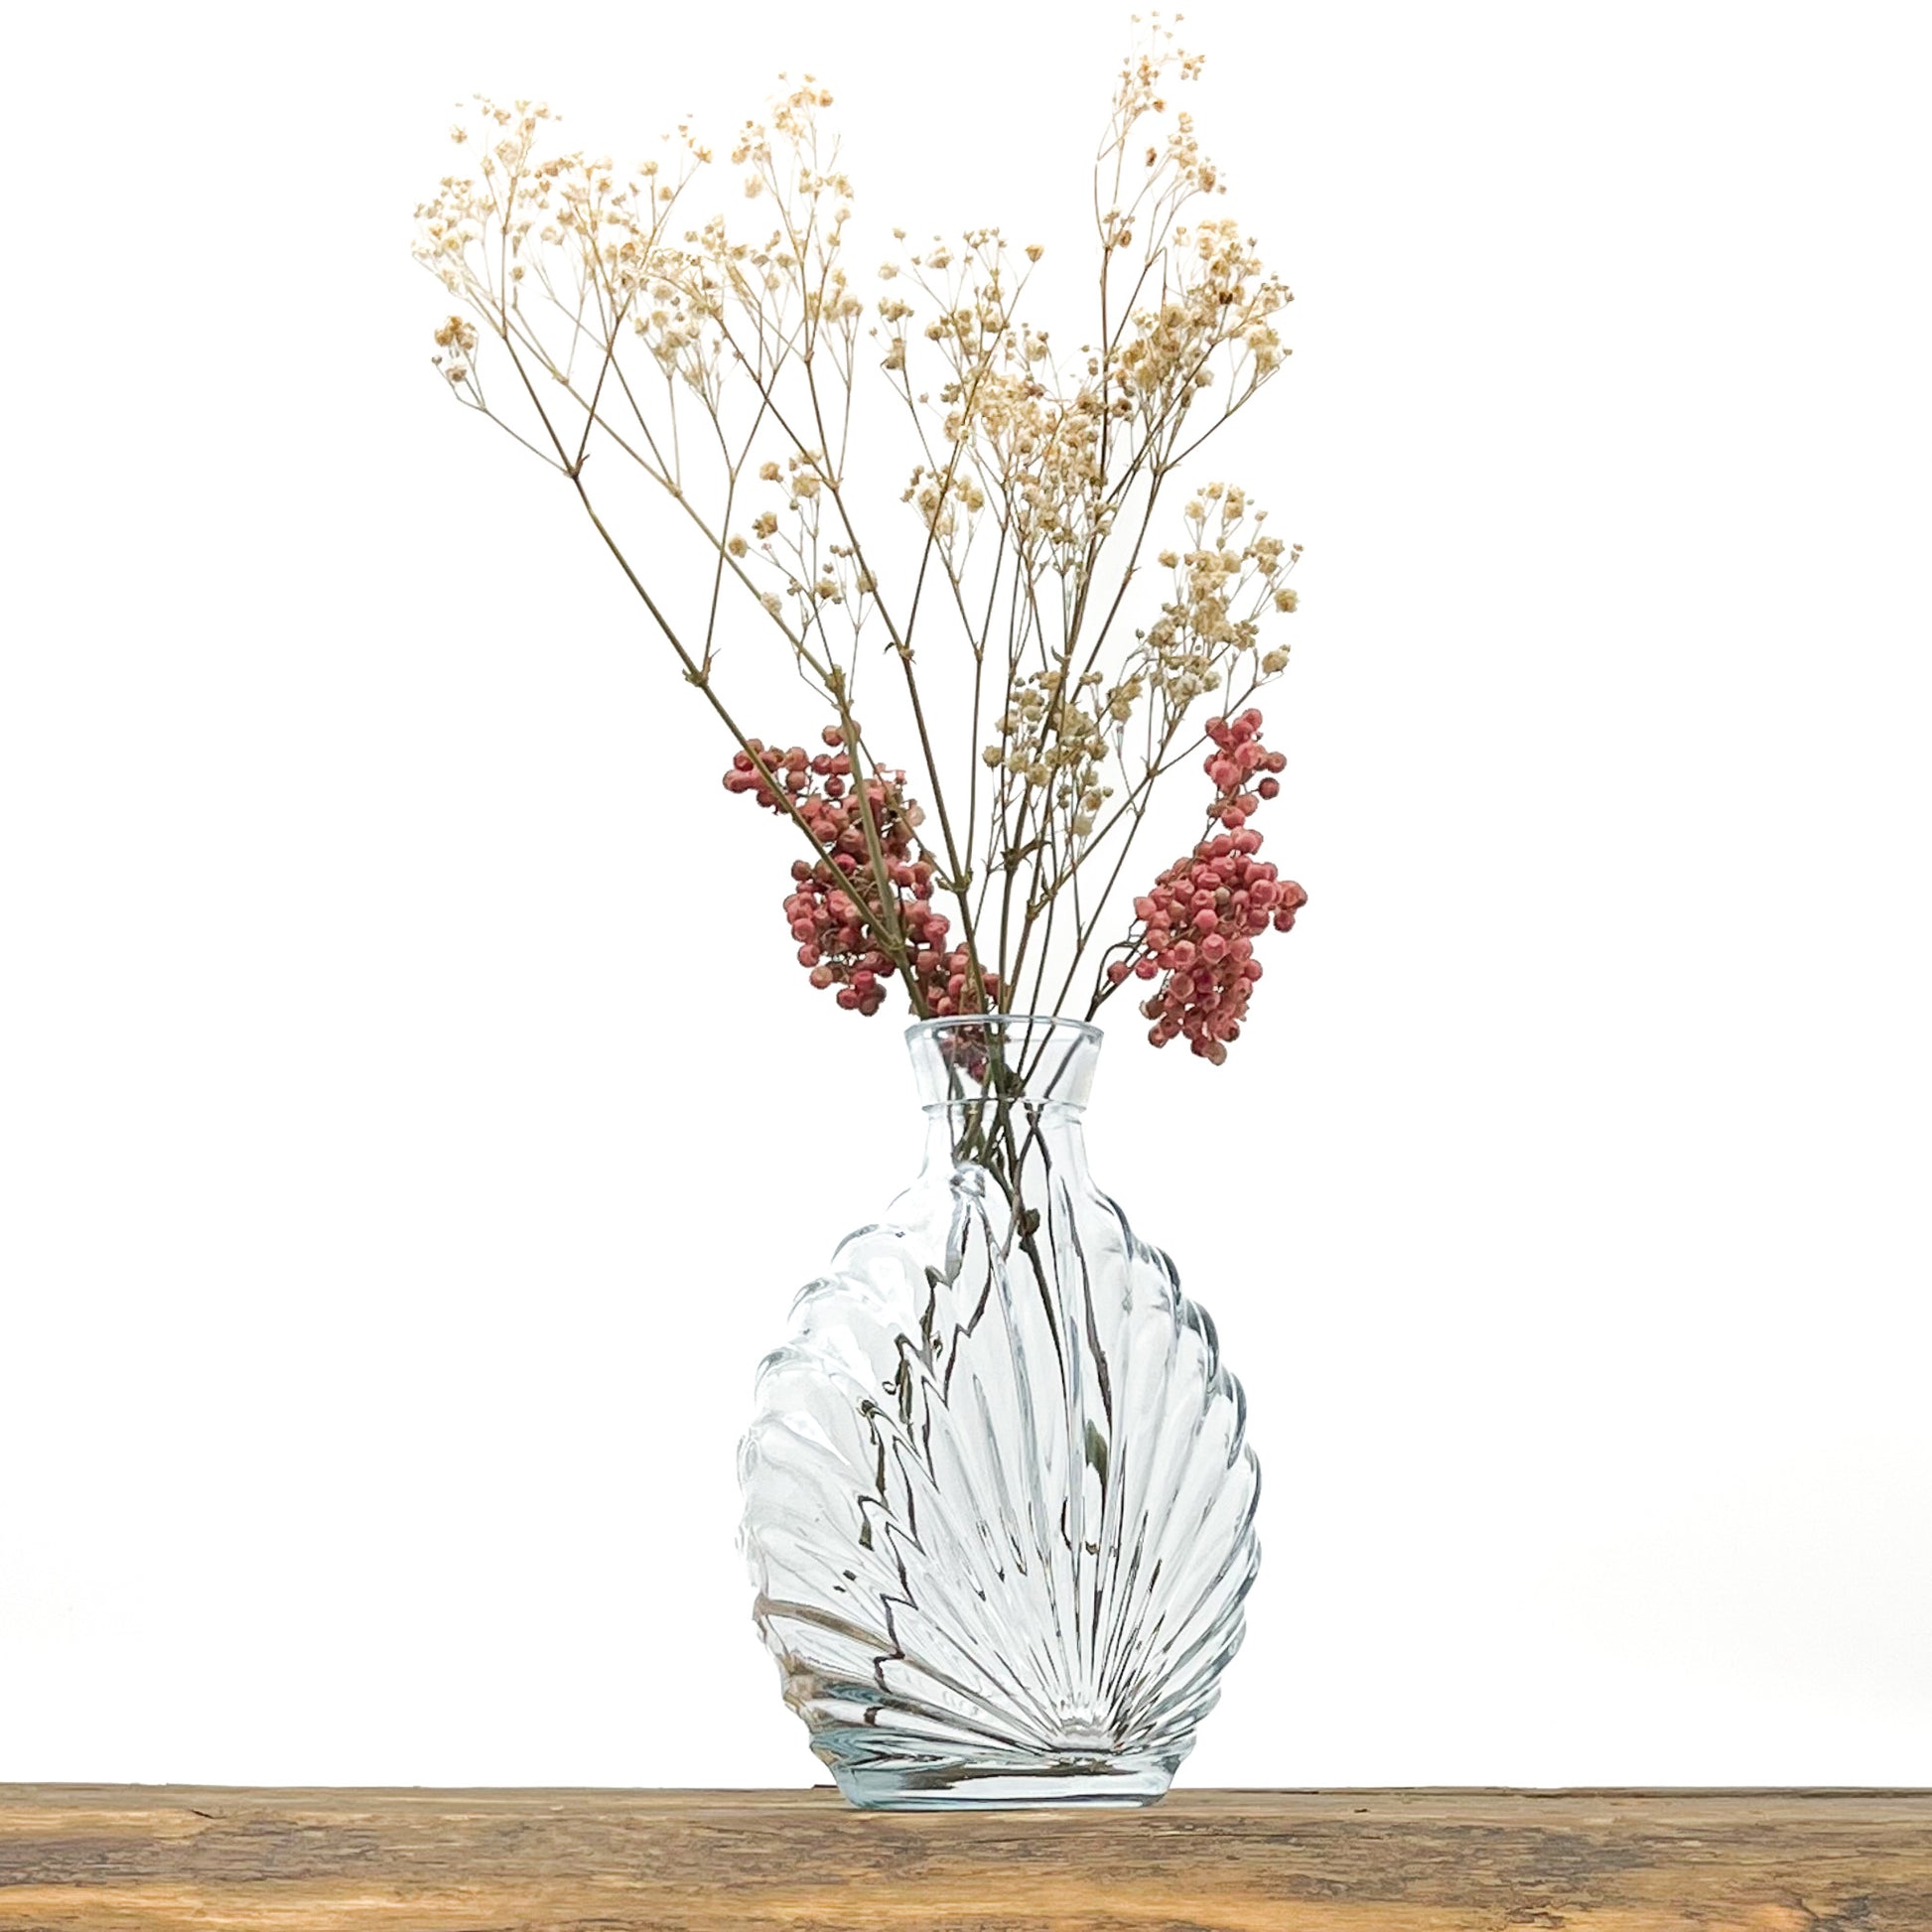 Vase en verre recyclé translucide au design vintage. Largeur 12.5 cm - Hauteur 17 cm. Livré avec fleurs séchées offertes.